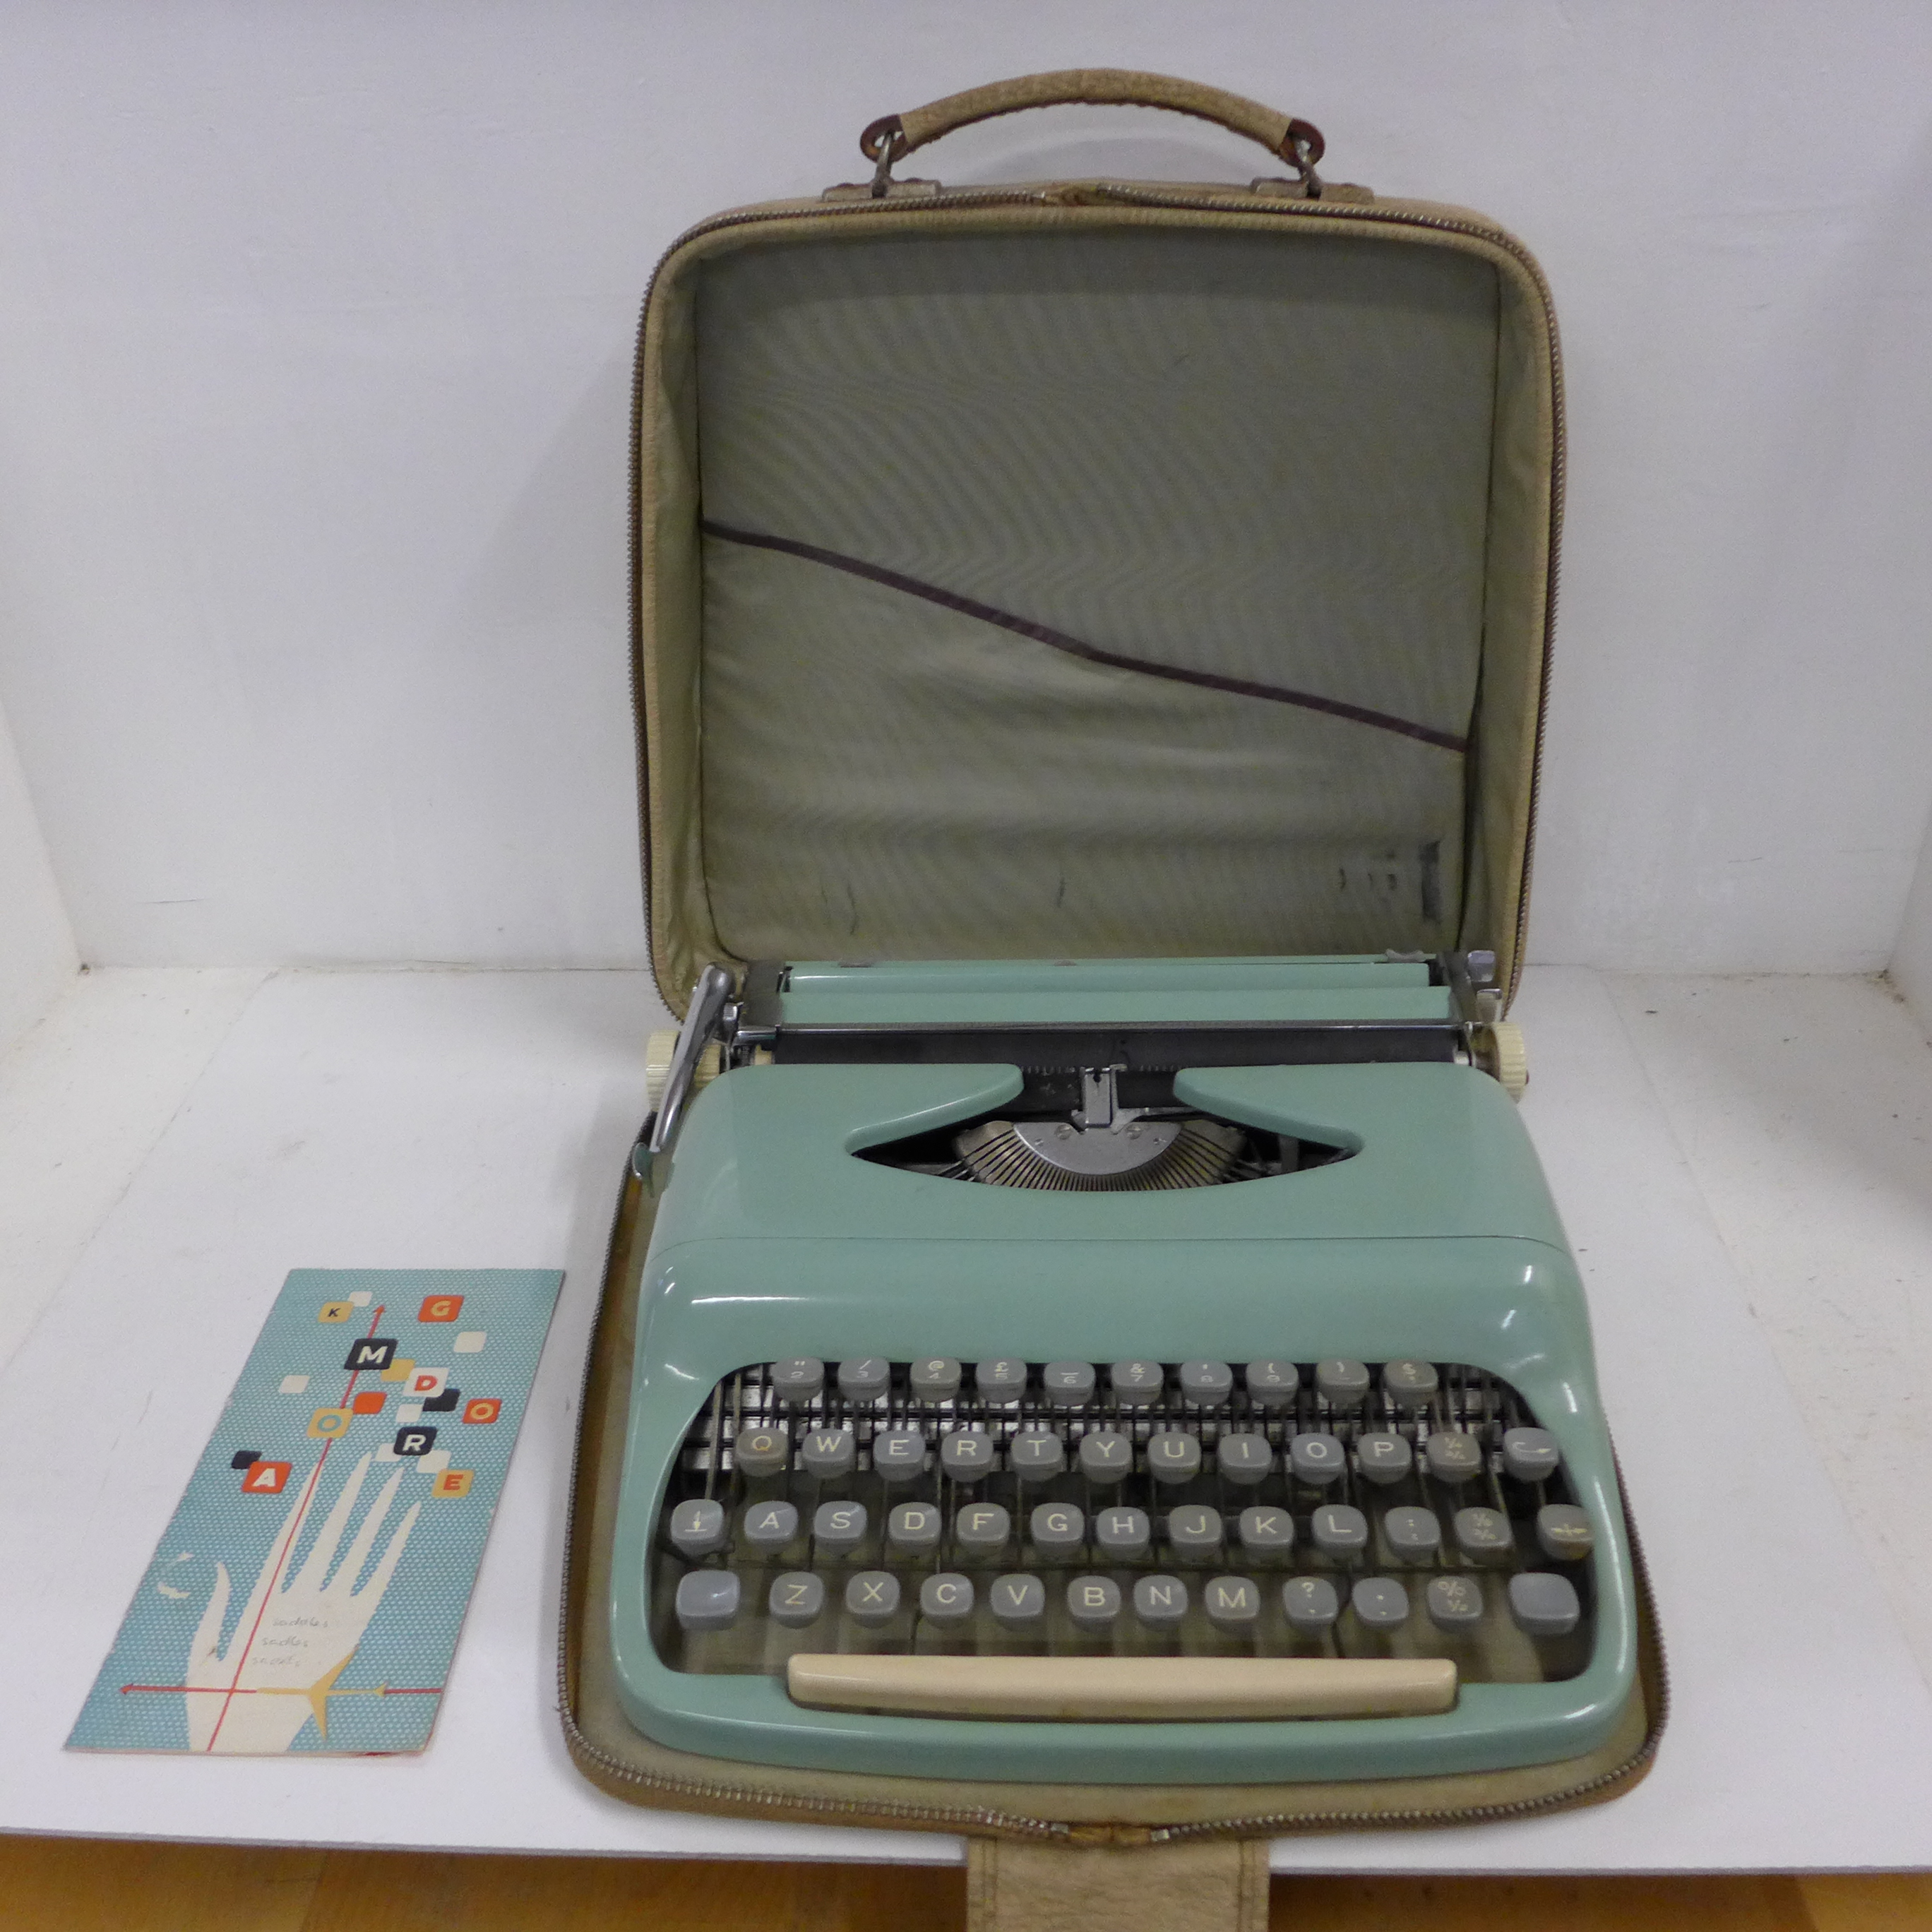 A blue typewriter in case